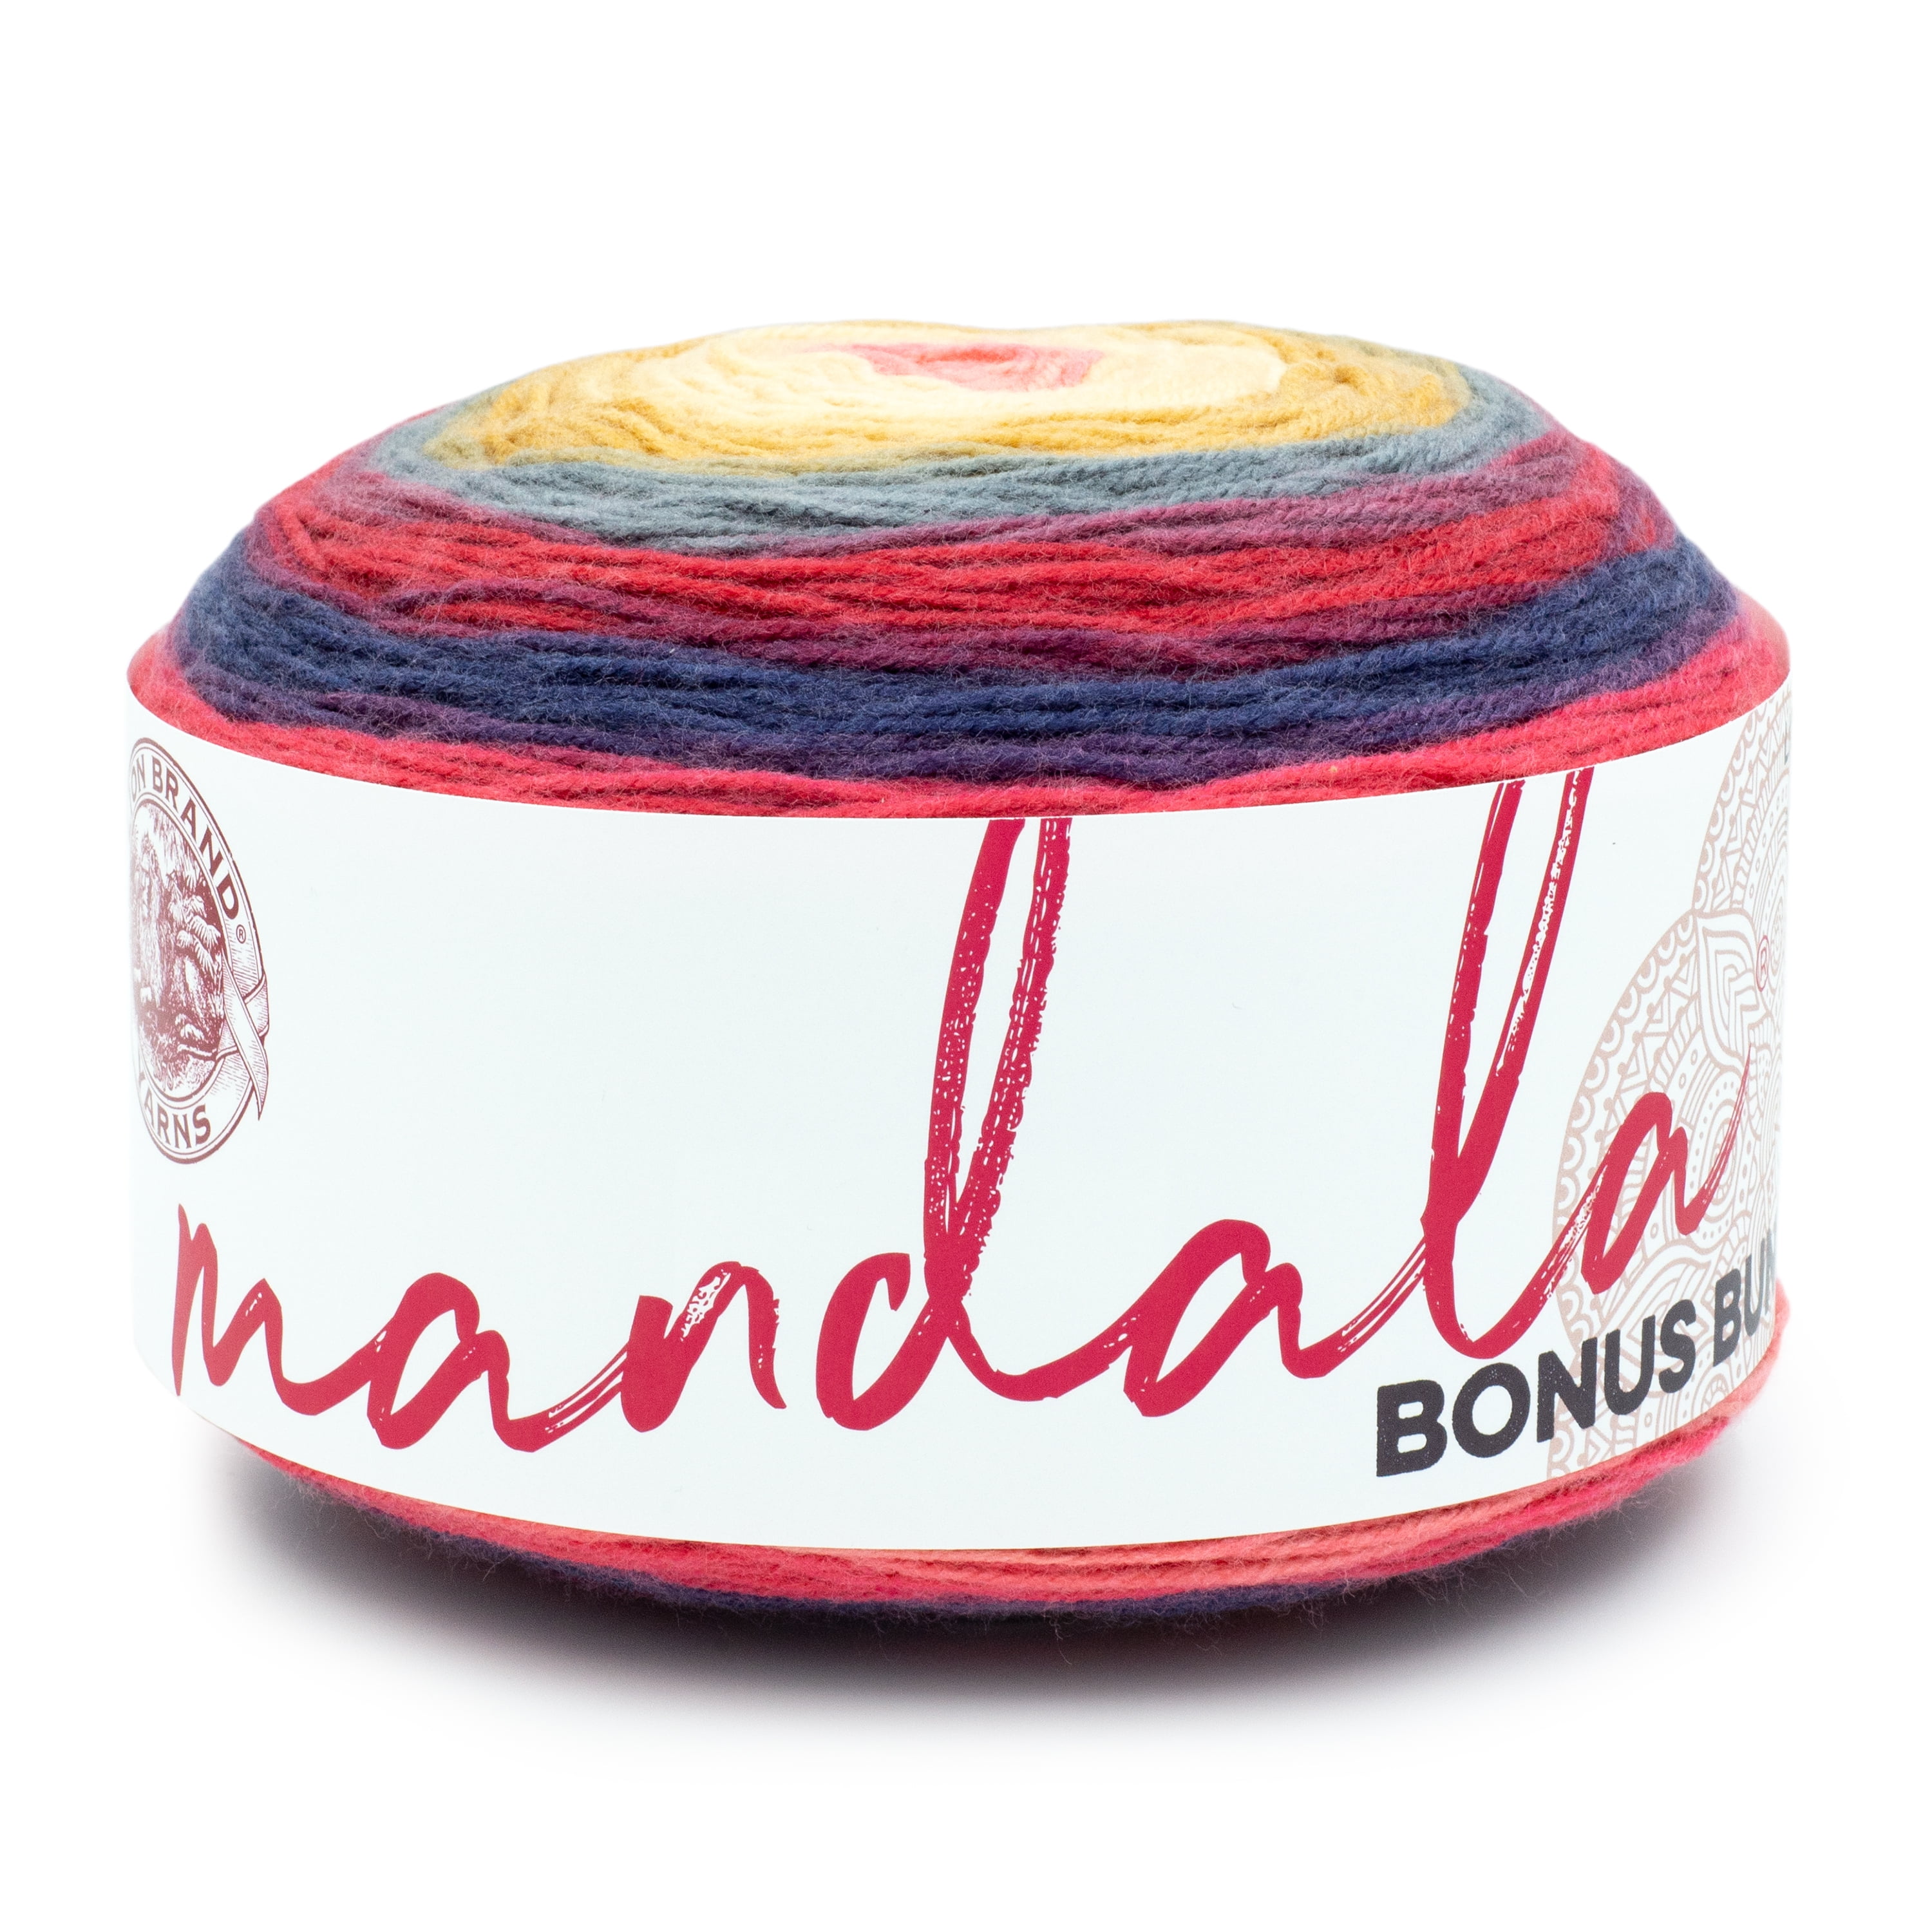 Lion Brand Mandala Yarn Genie Acrylic Super Soft 5,3oz/150g